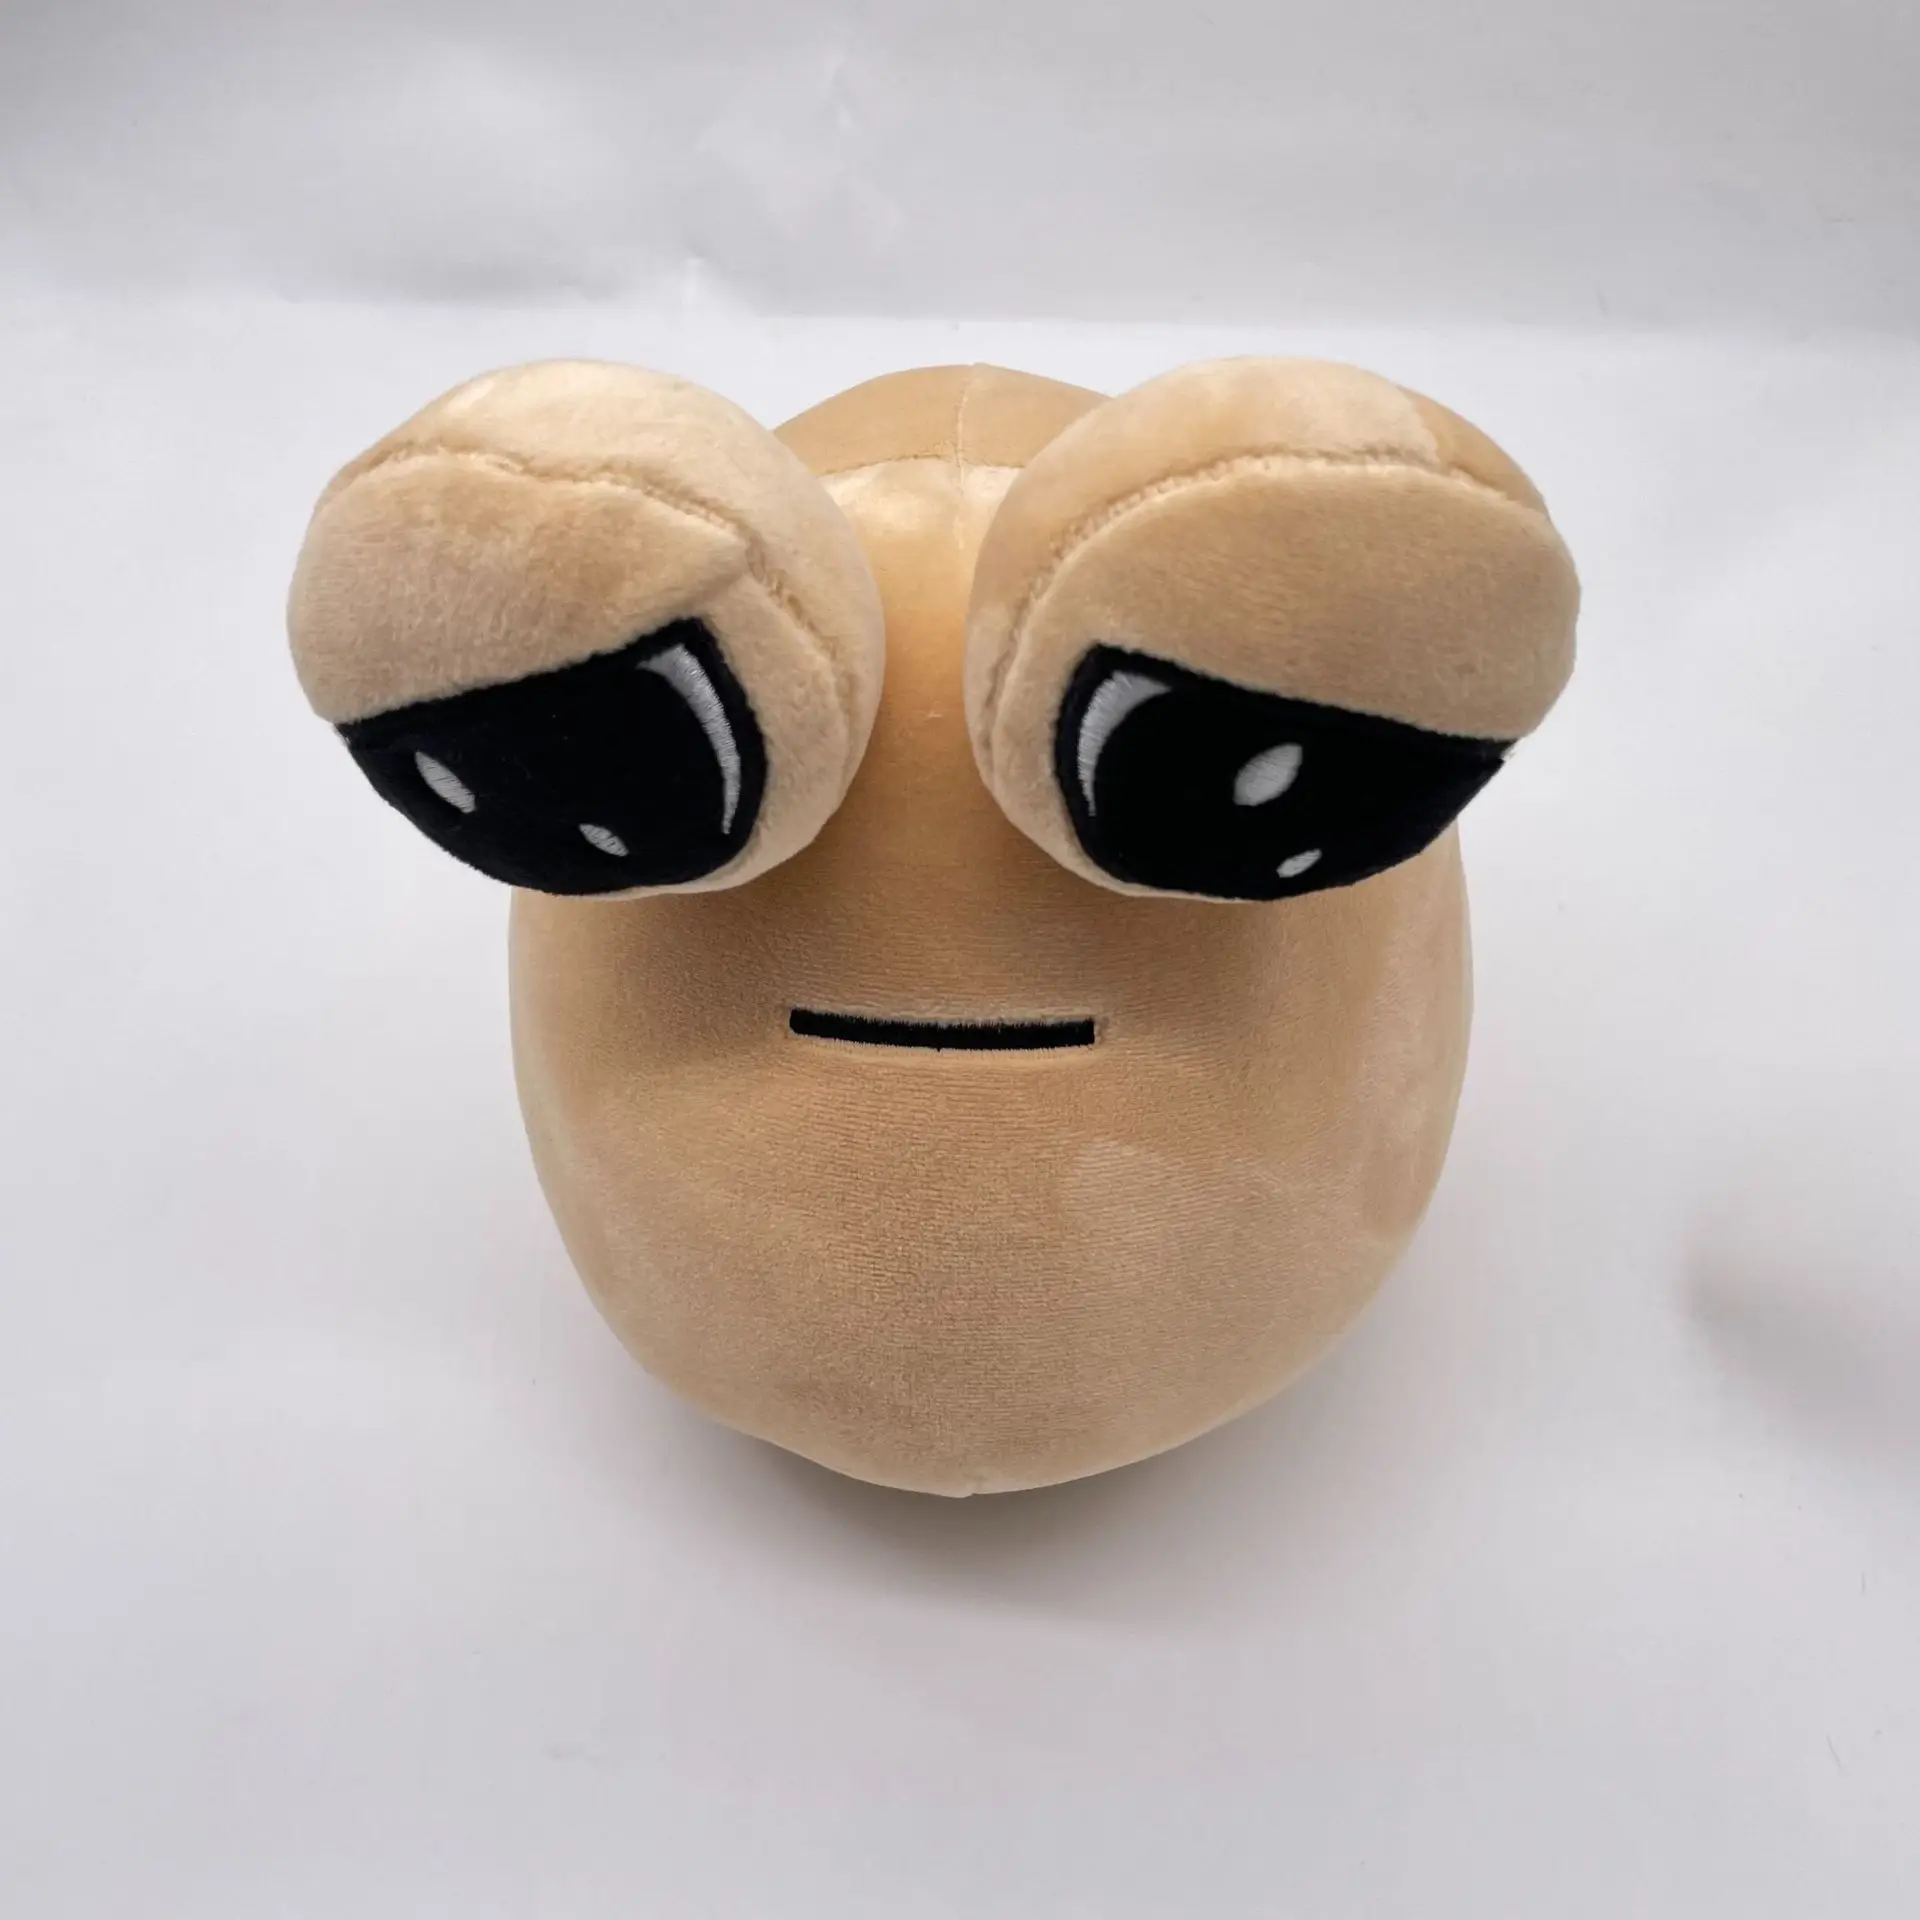 8.7 Inch Plush Toy My Pet Alien Pou Plush Toy Furdiburb Emotion